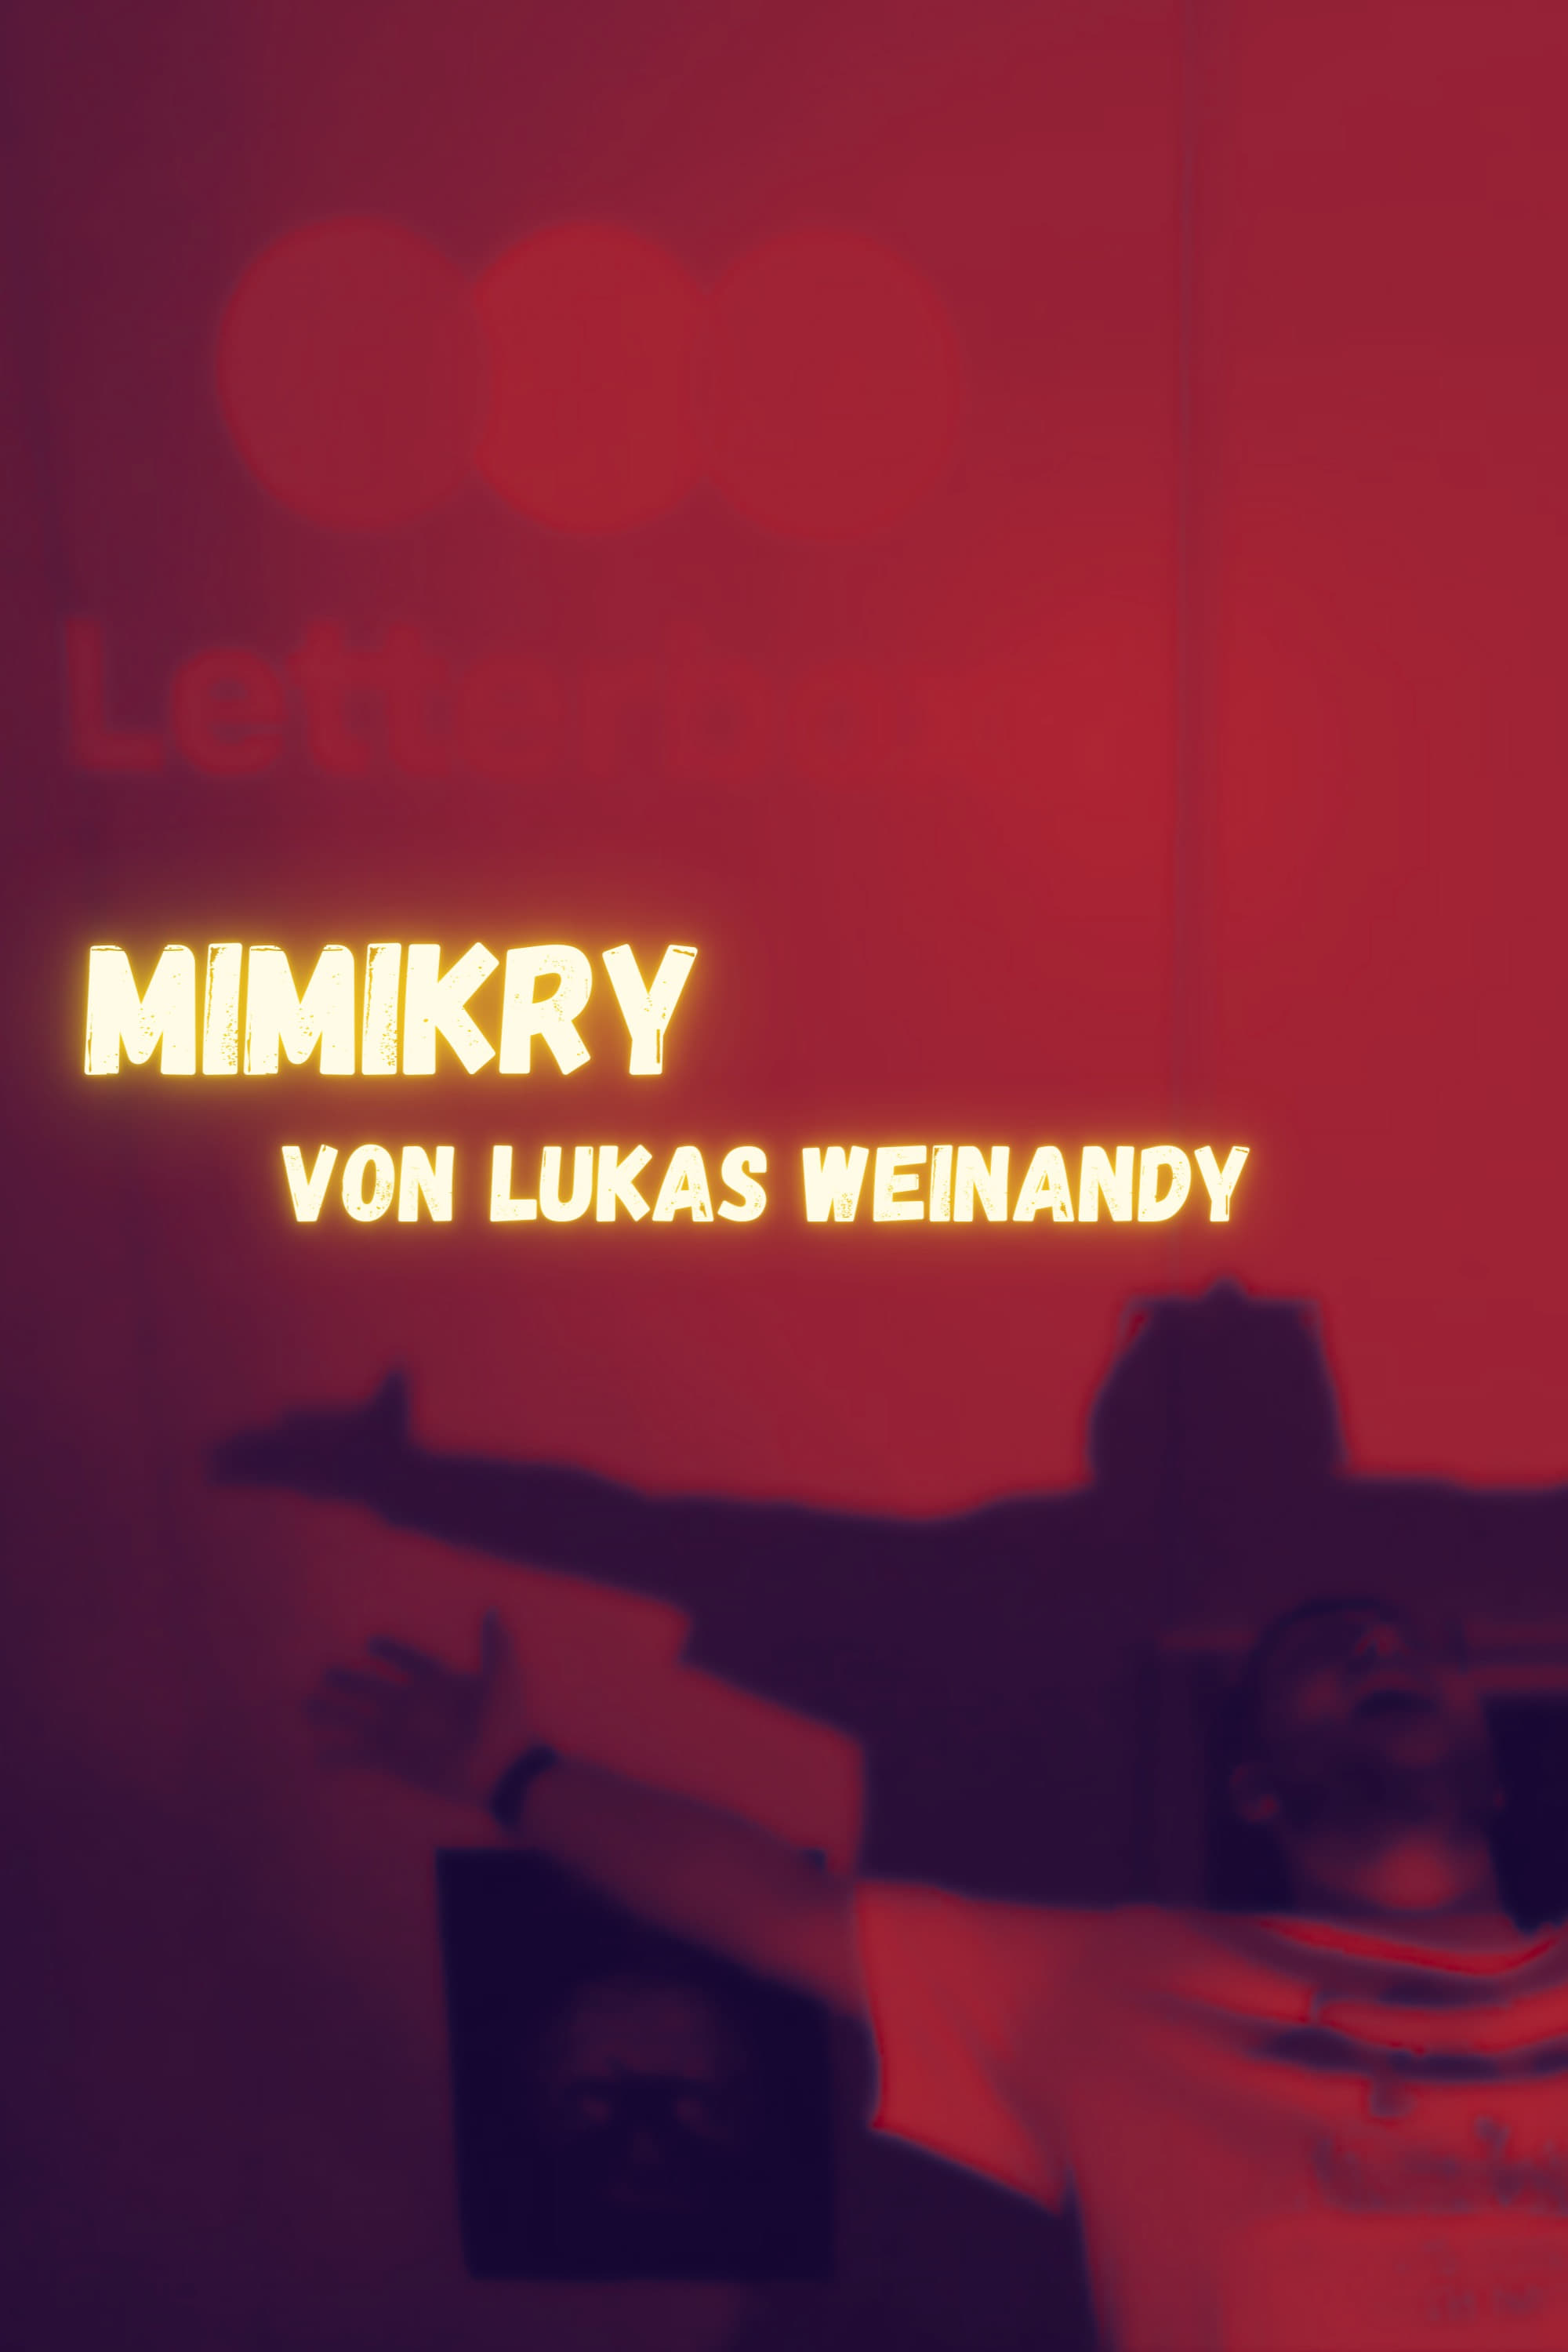 Lukas Weinandy: Mimikry